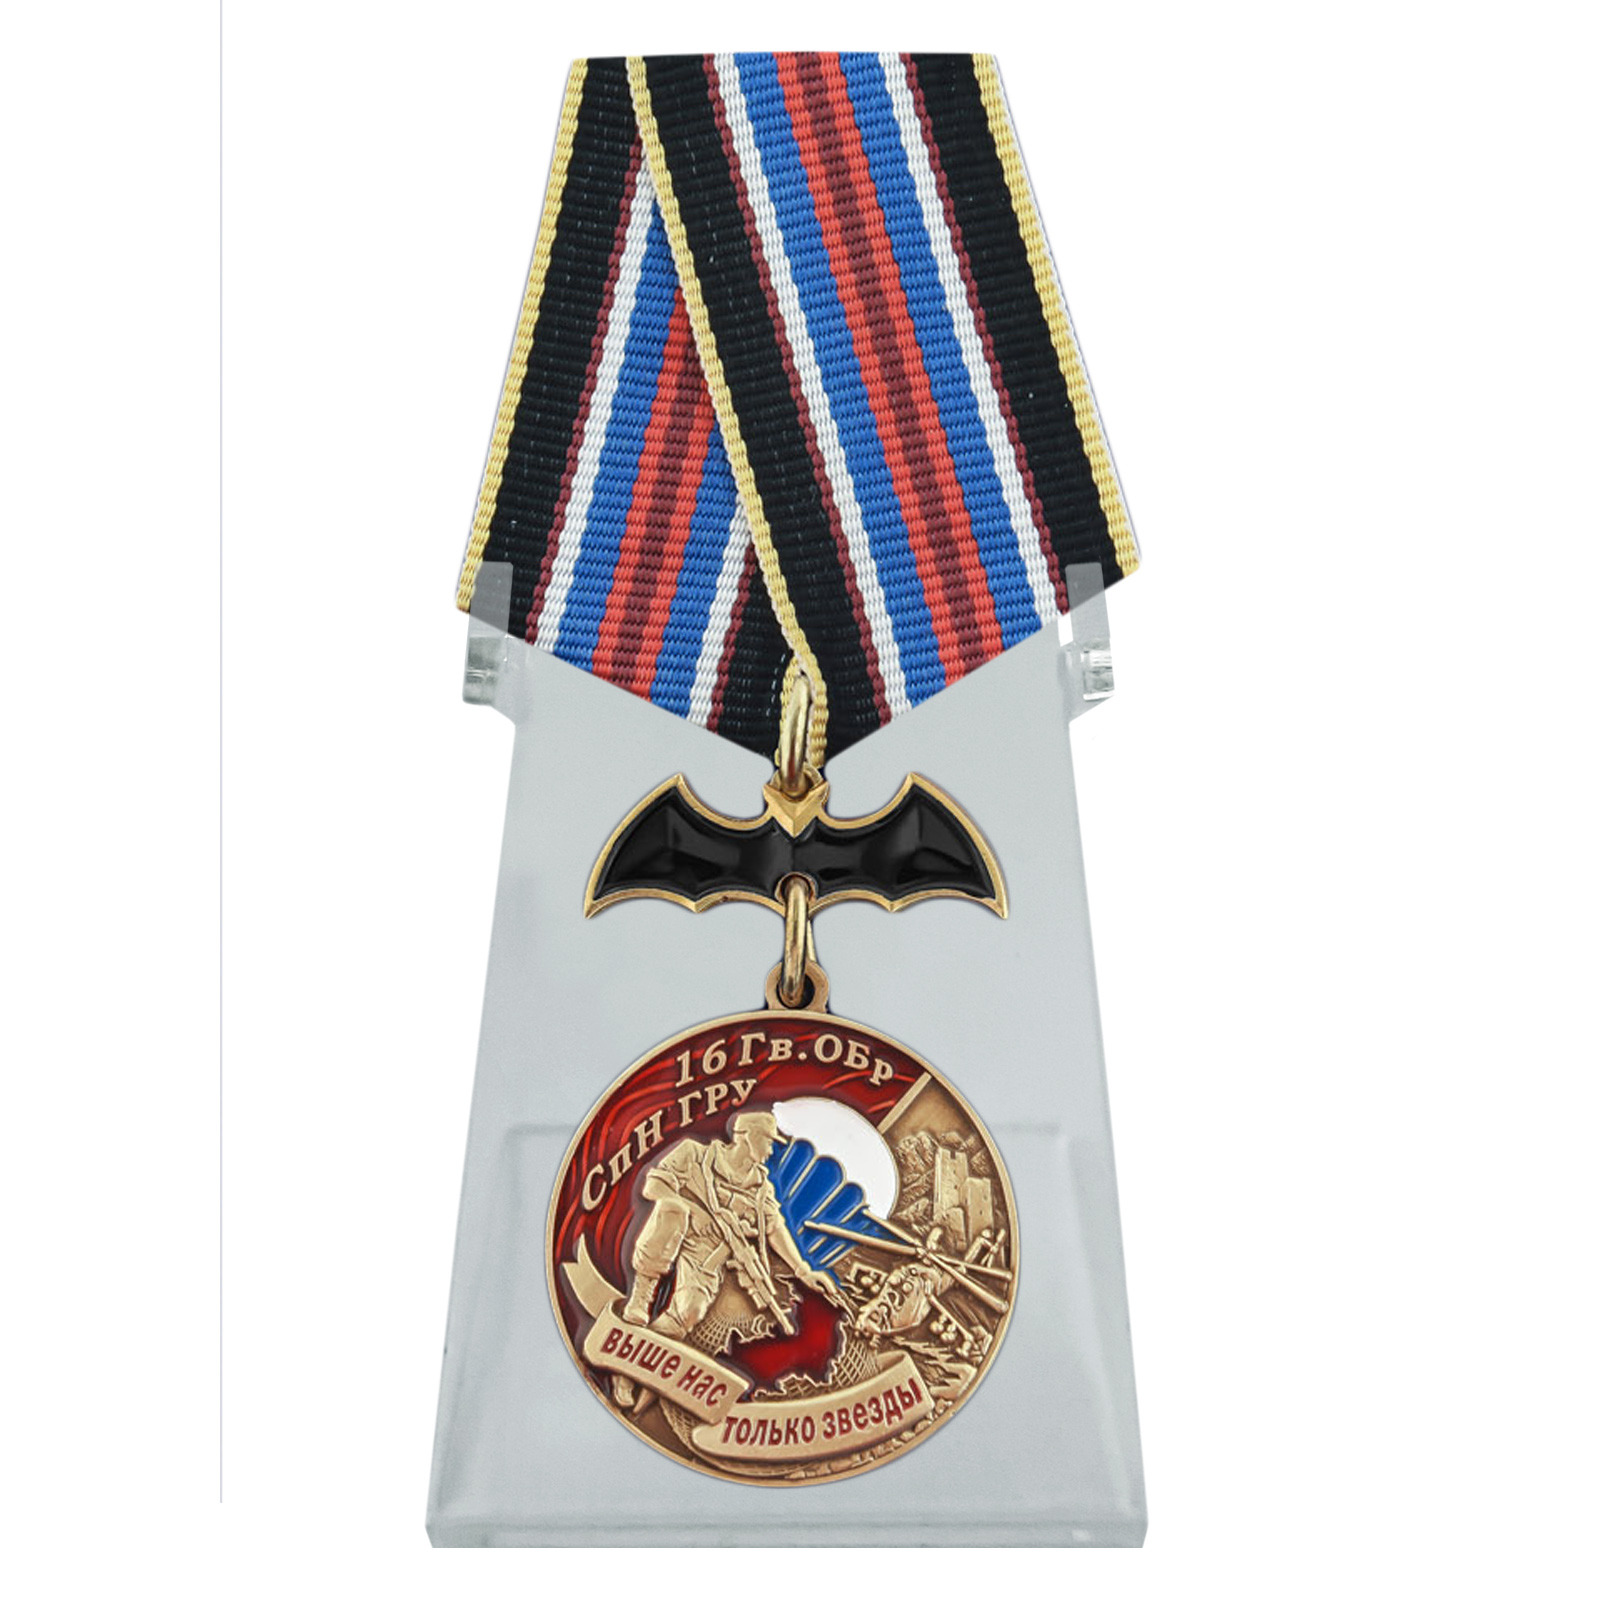 Купить медаль 16 Гв. ОБрСпН ГРУ на подставке онлайн